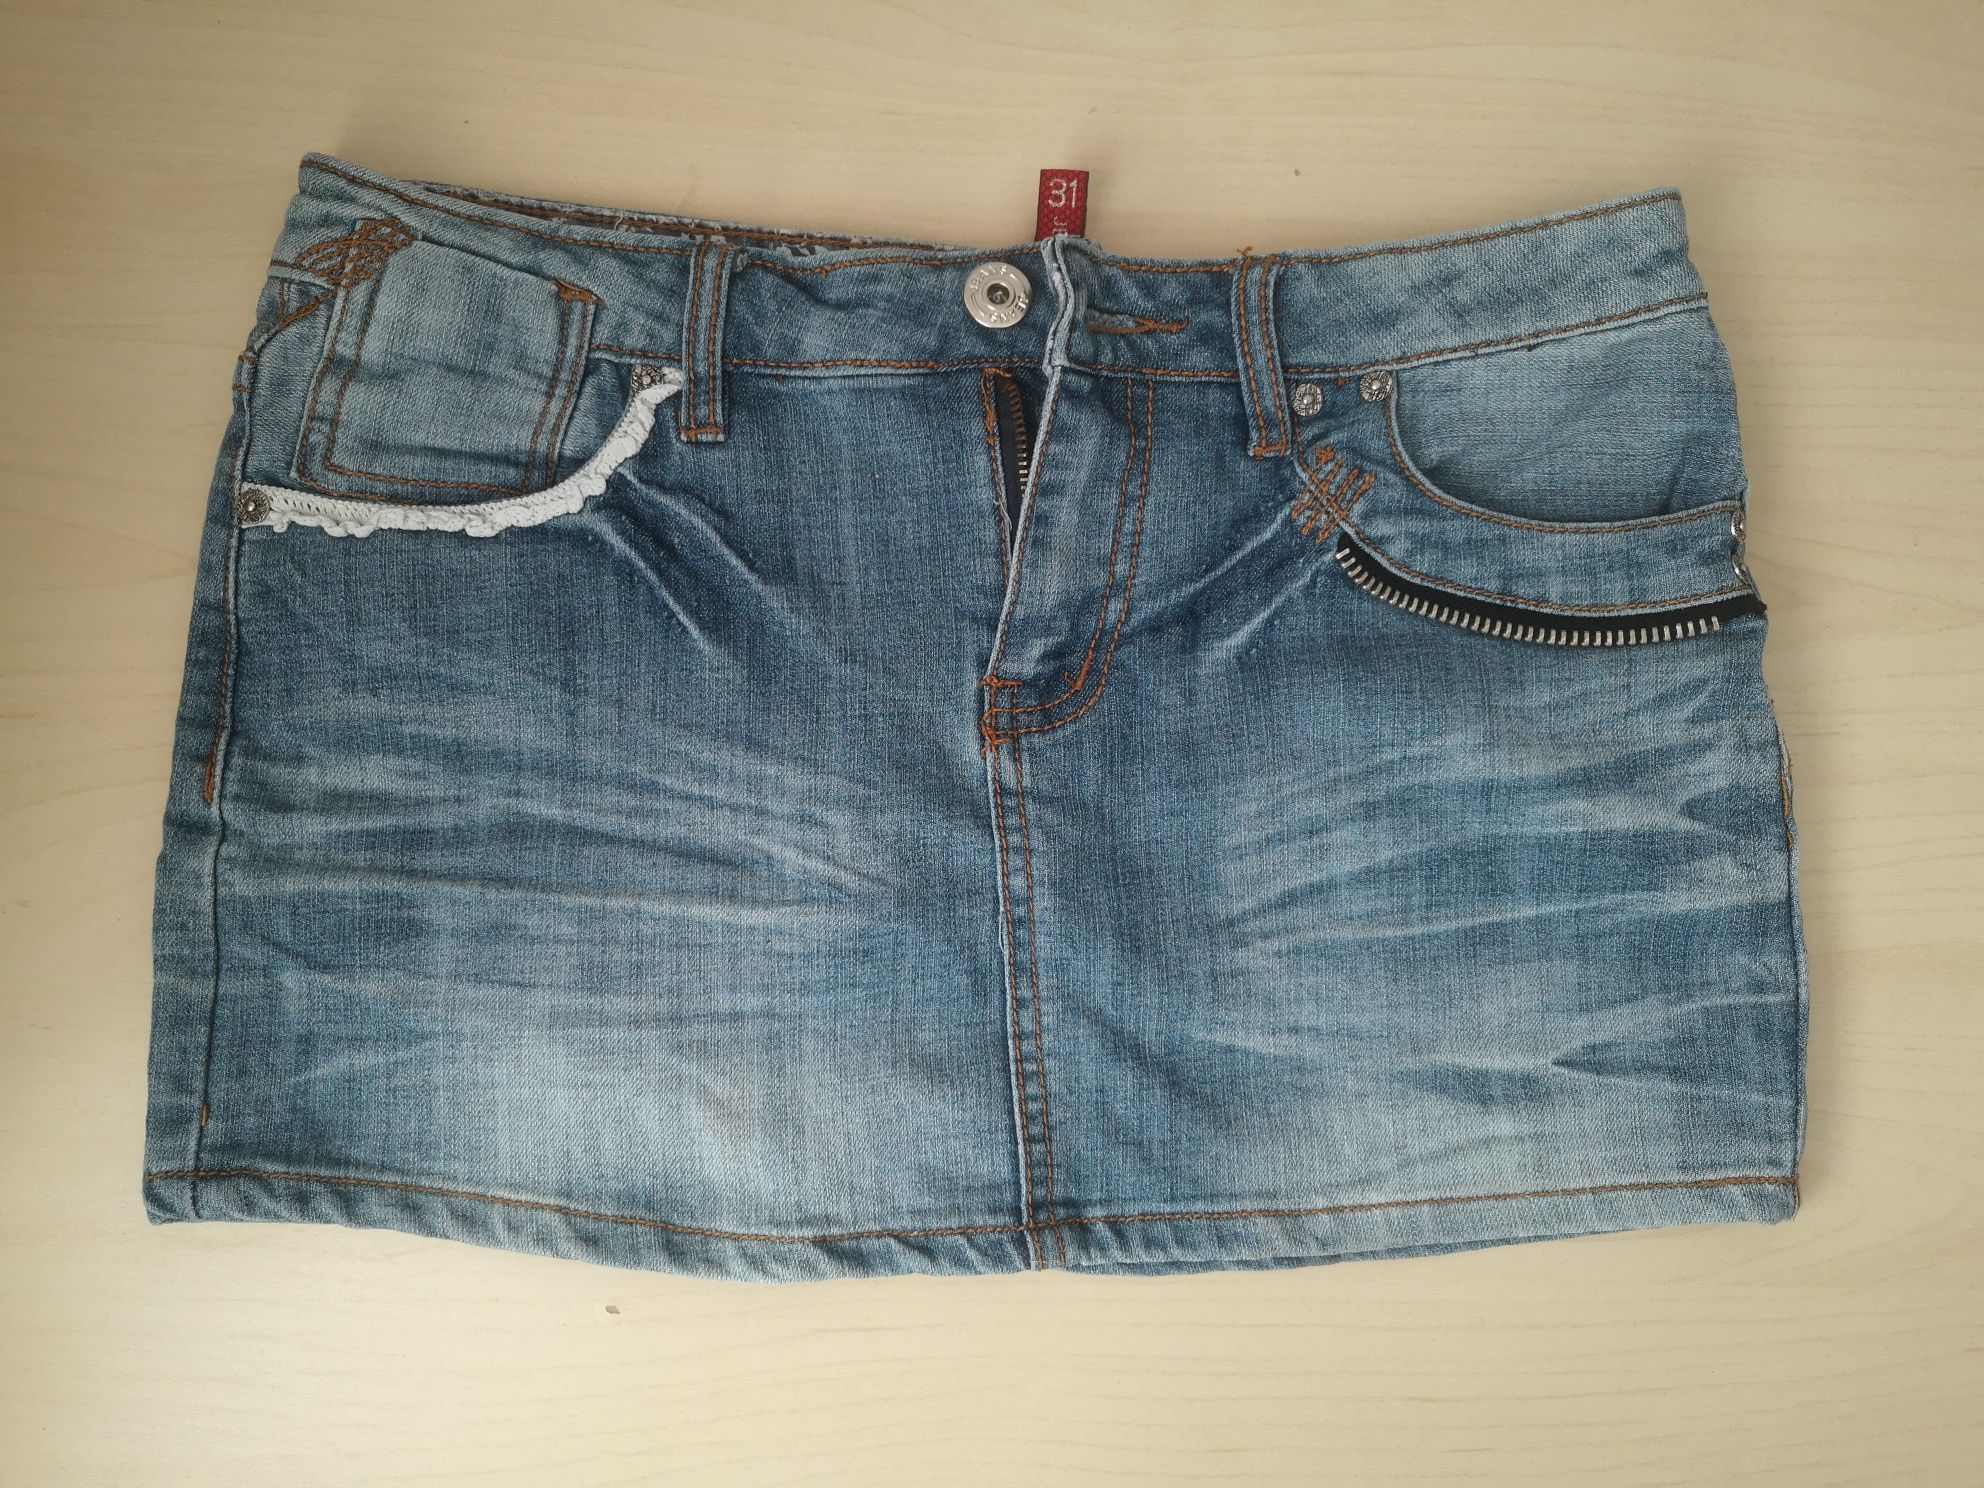 Spódniczka mini jeansowa. Rozmiar S.